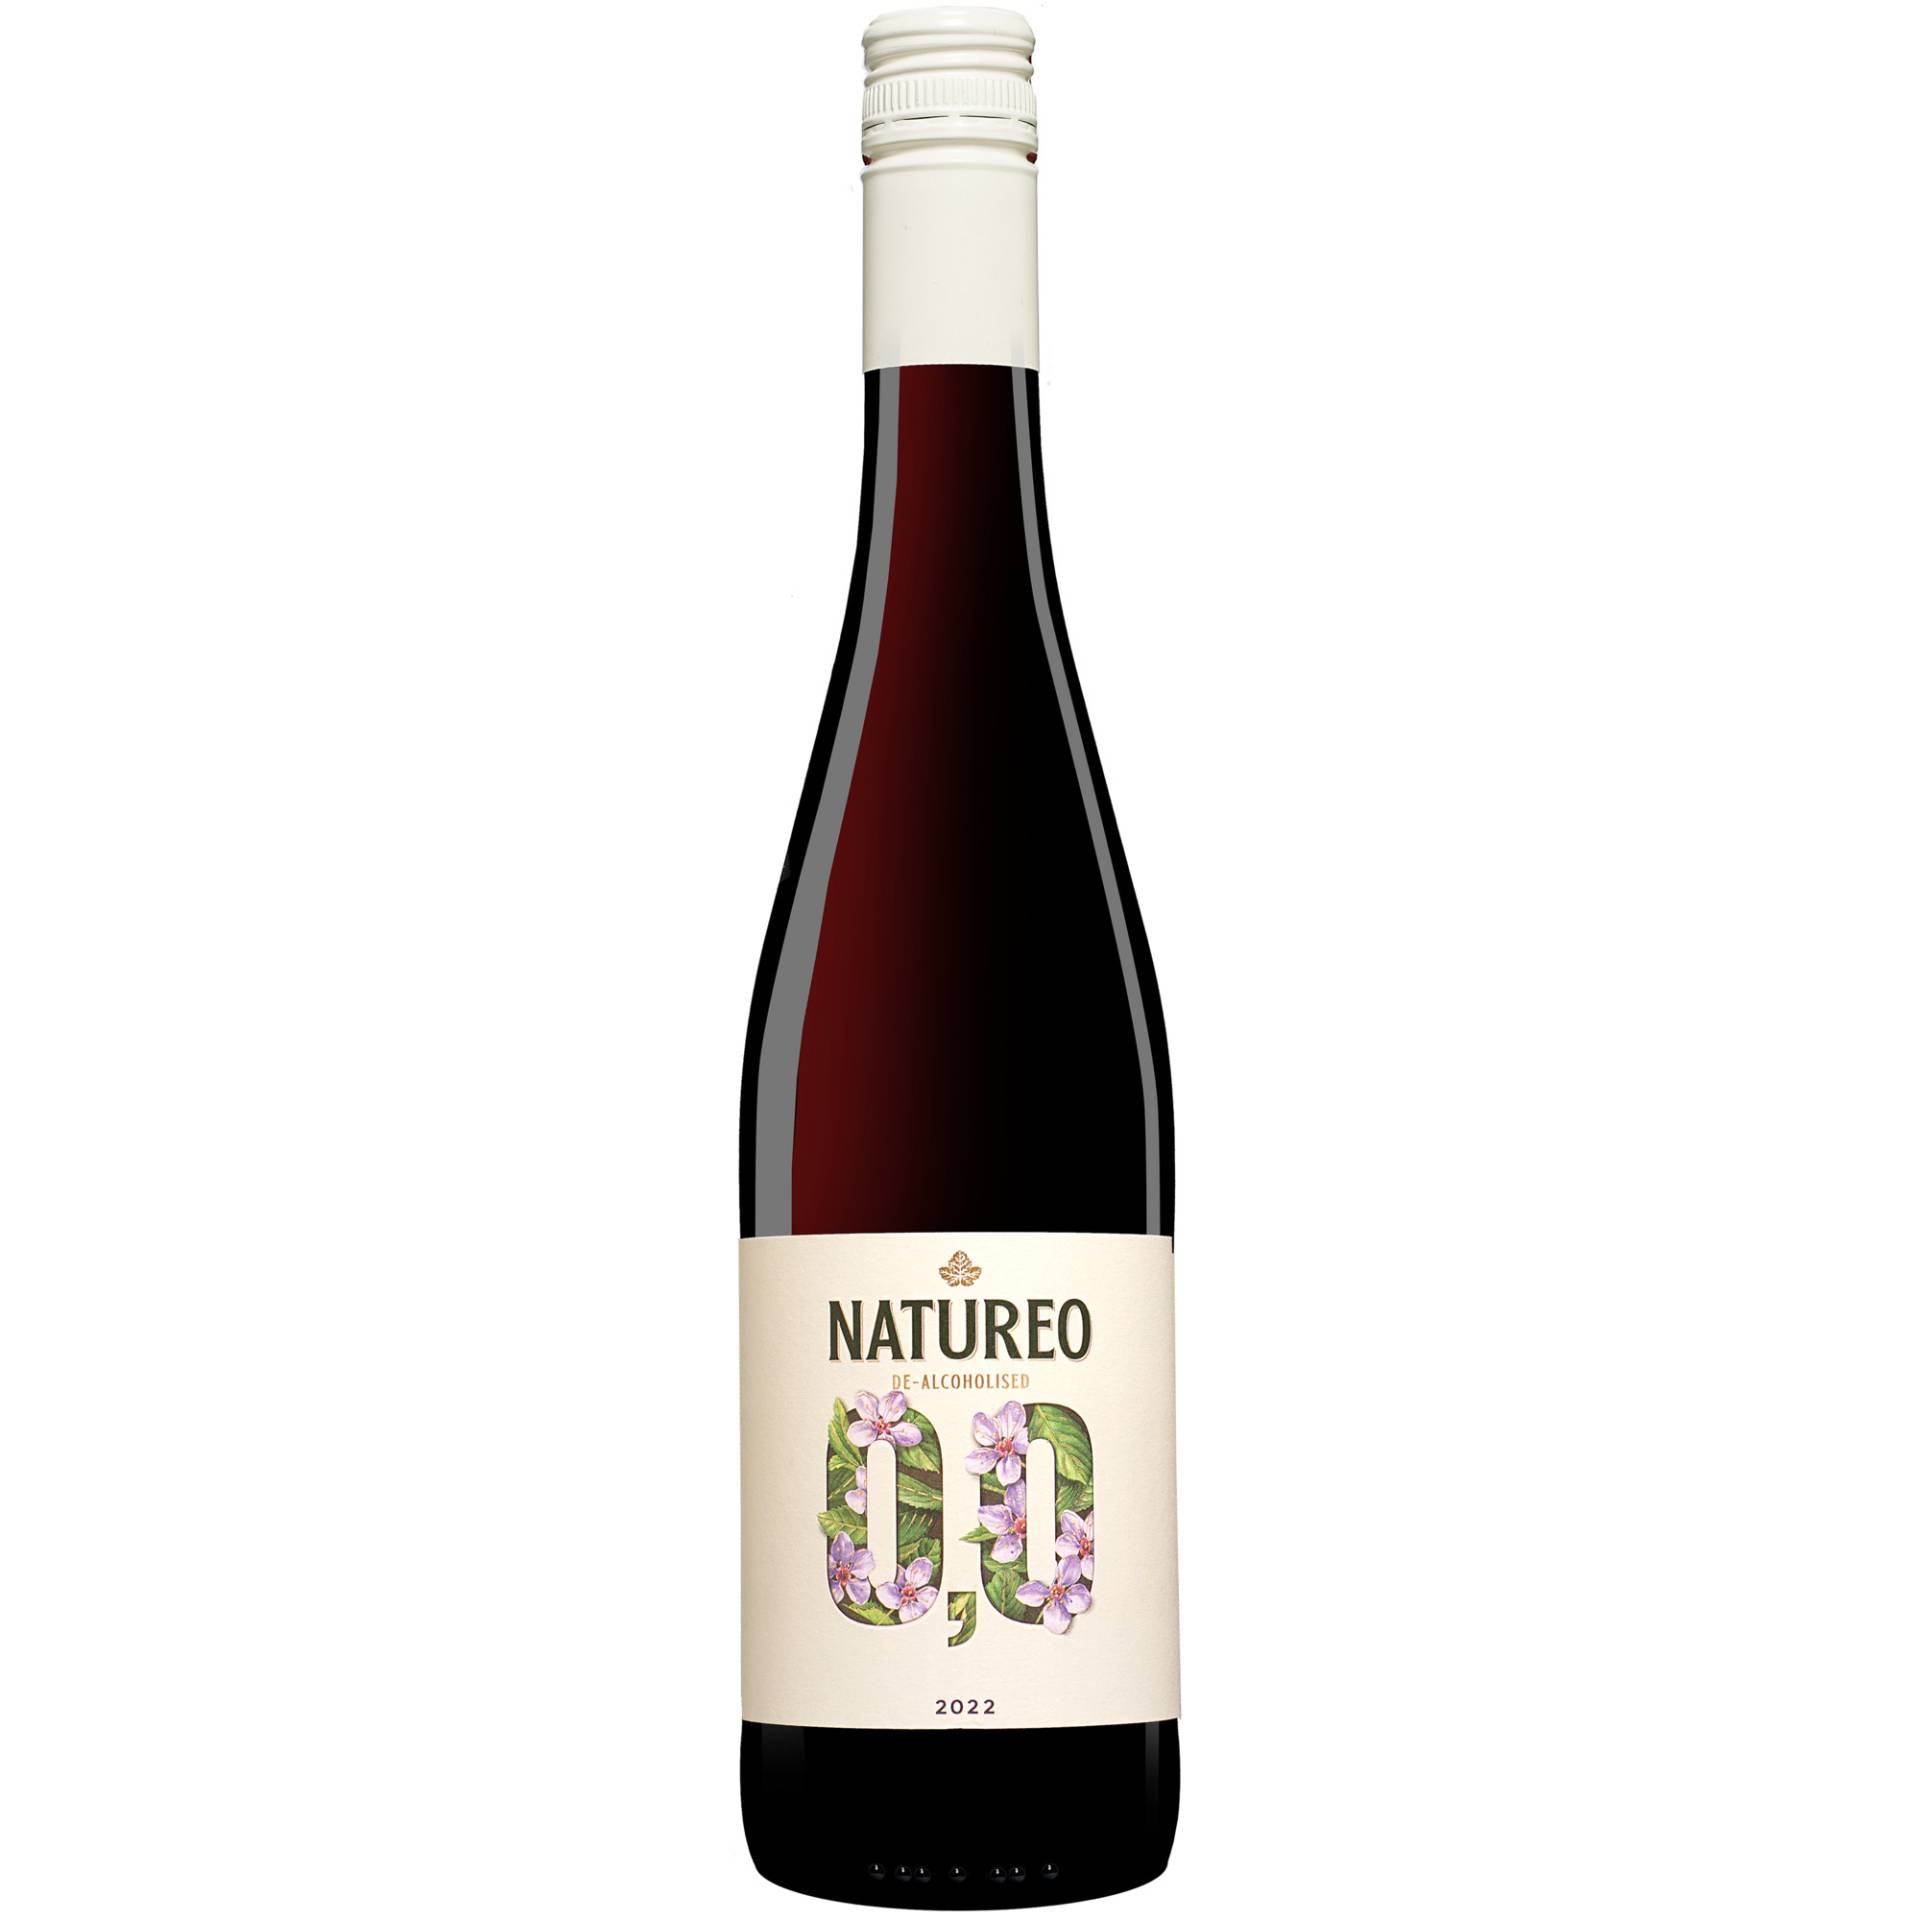 Torres »Natureo« Tinto 2022  0.75L Rotwein aus Spanien von Familia Torres